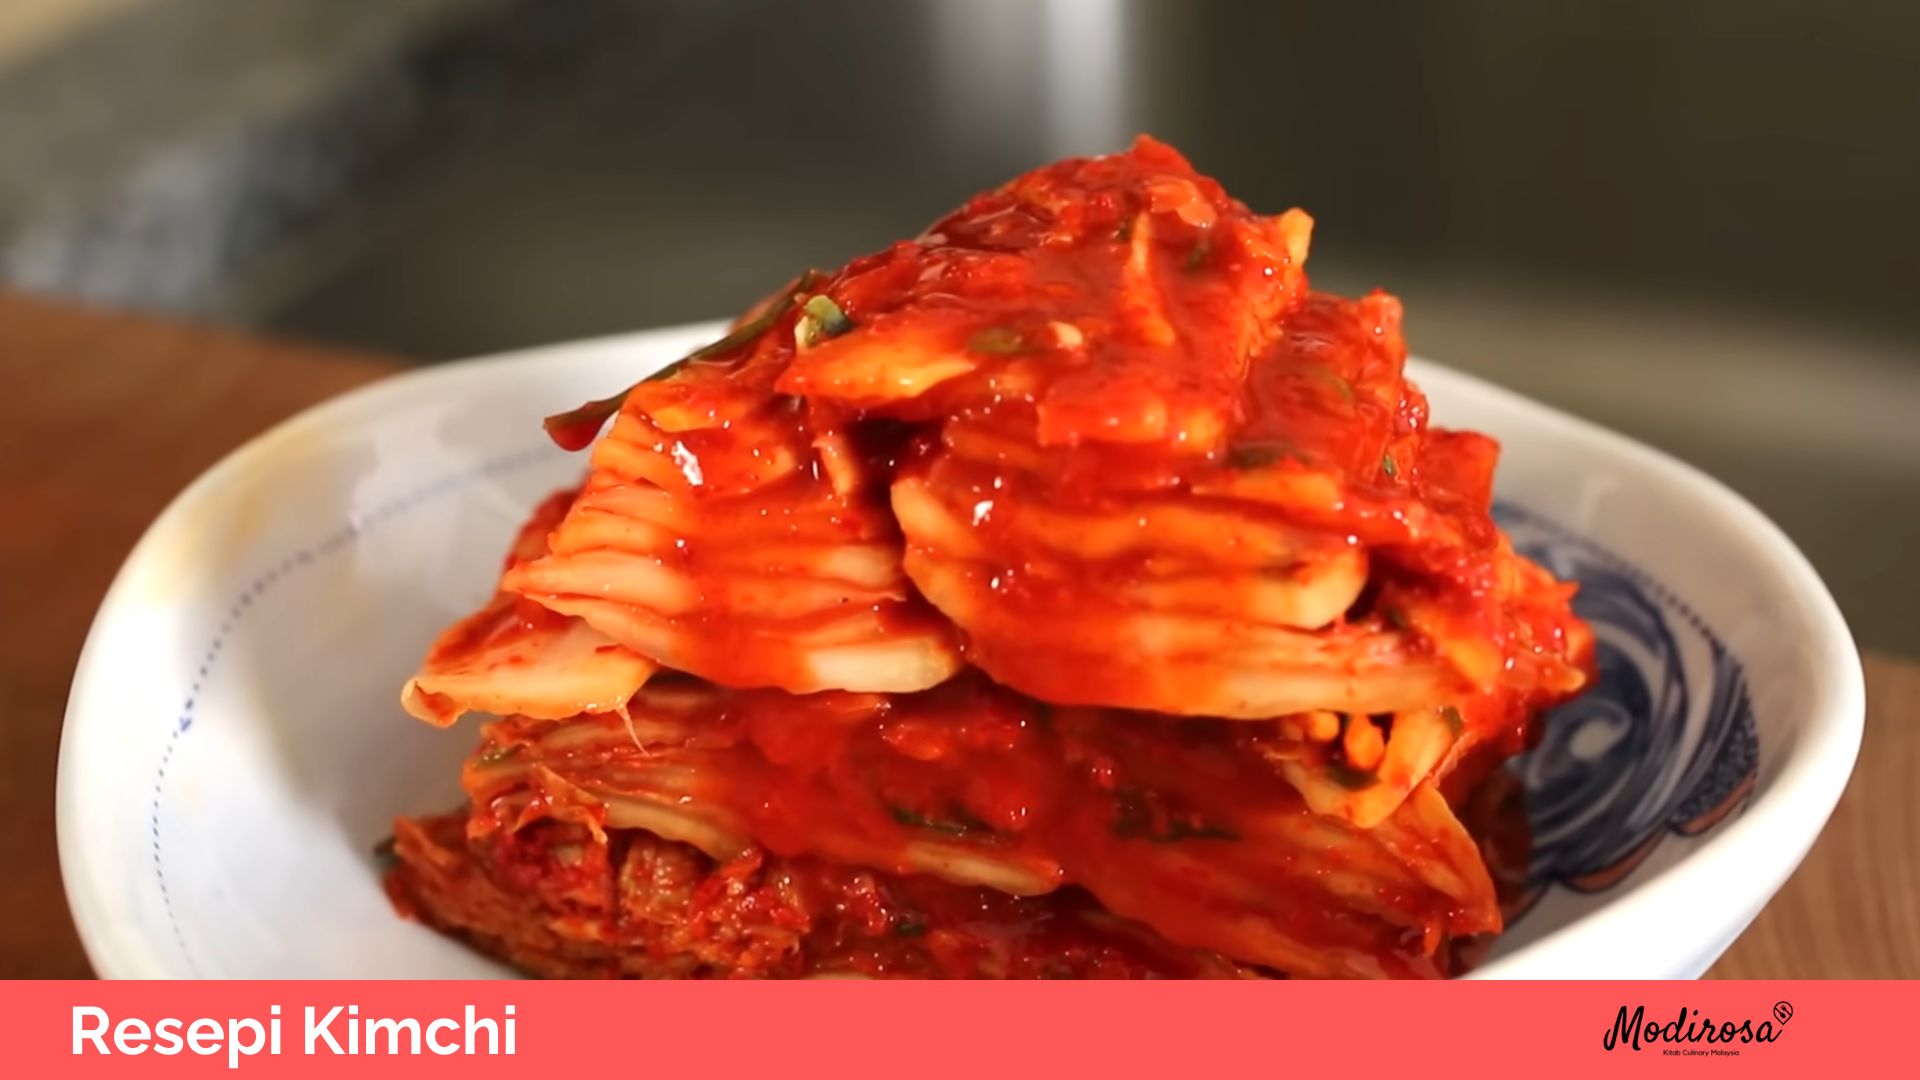 Resepi Kimchi 1